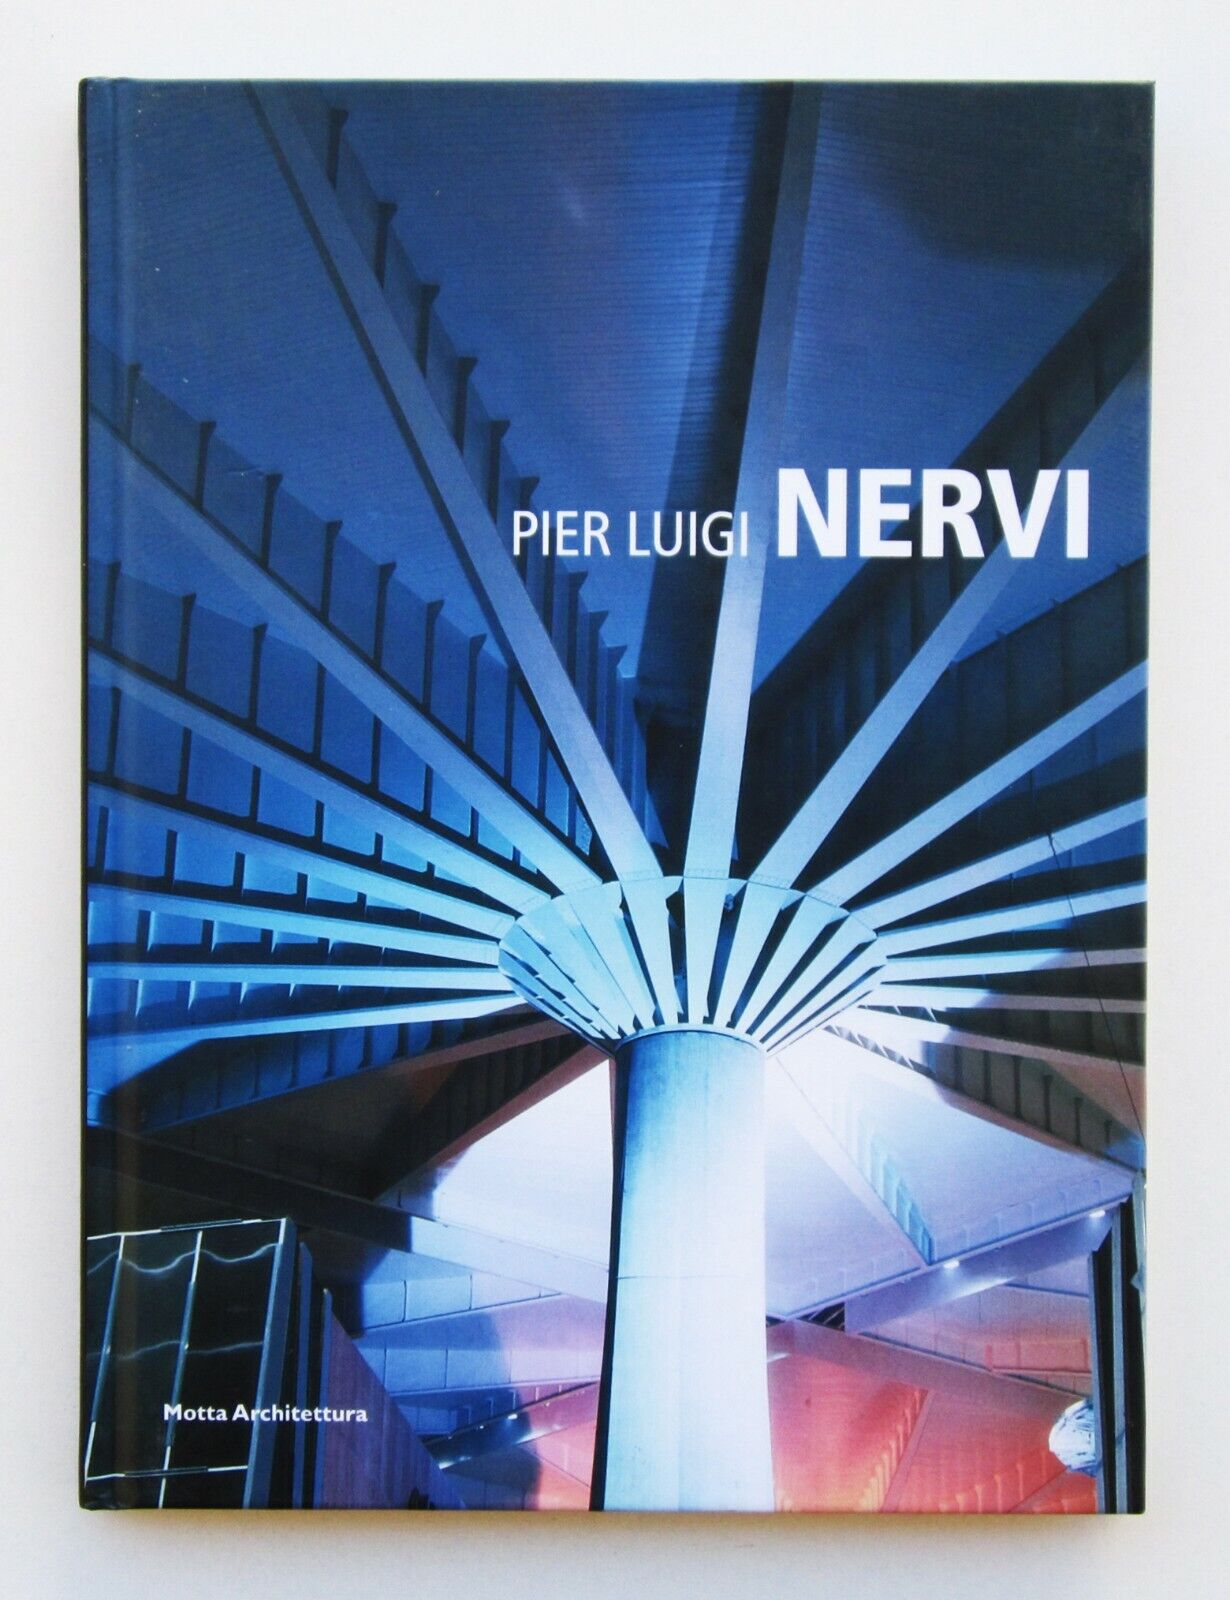 Pier Luigi Nervi. Motta Architettura, 2009 (I edizione)